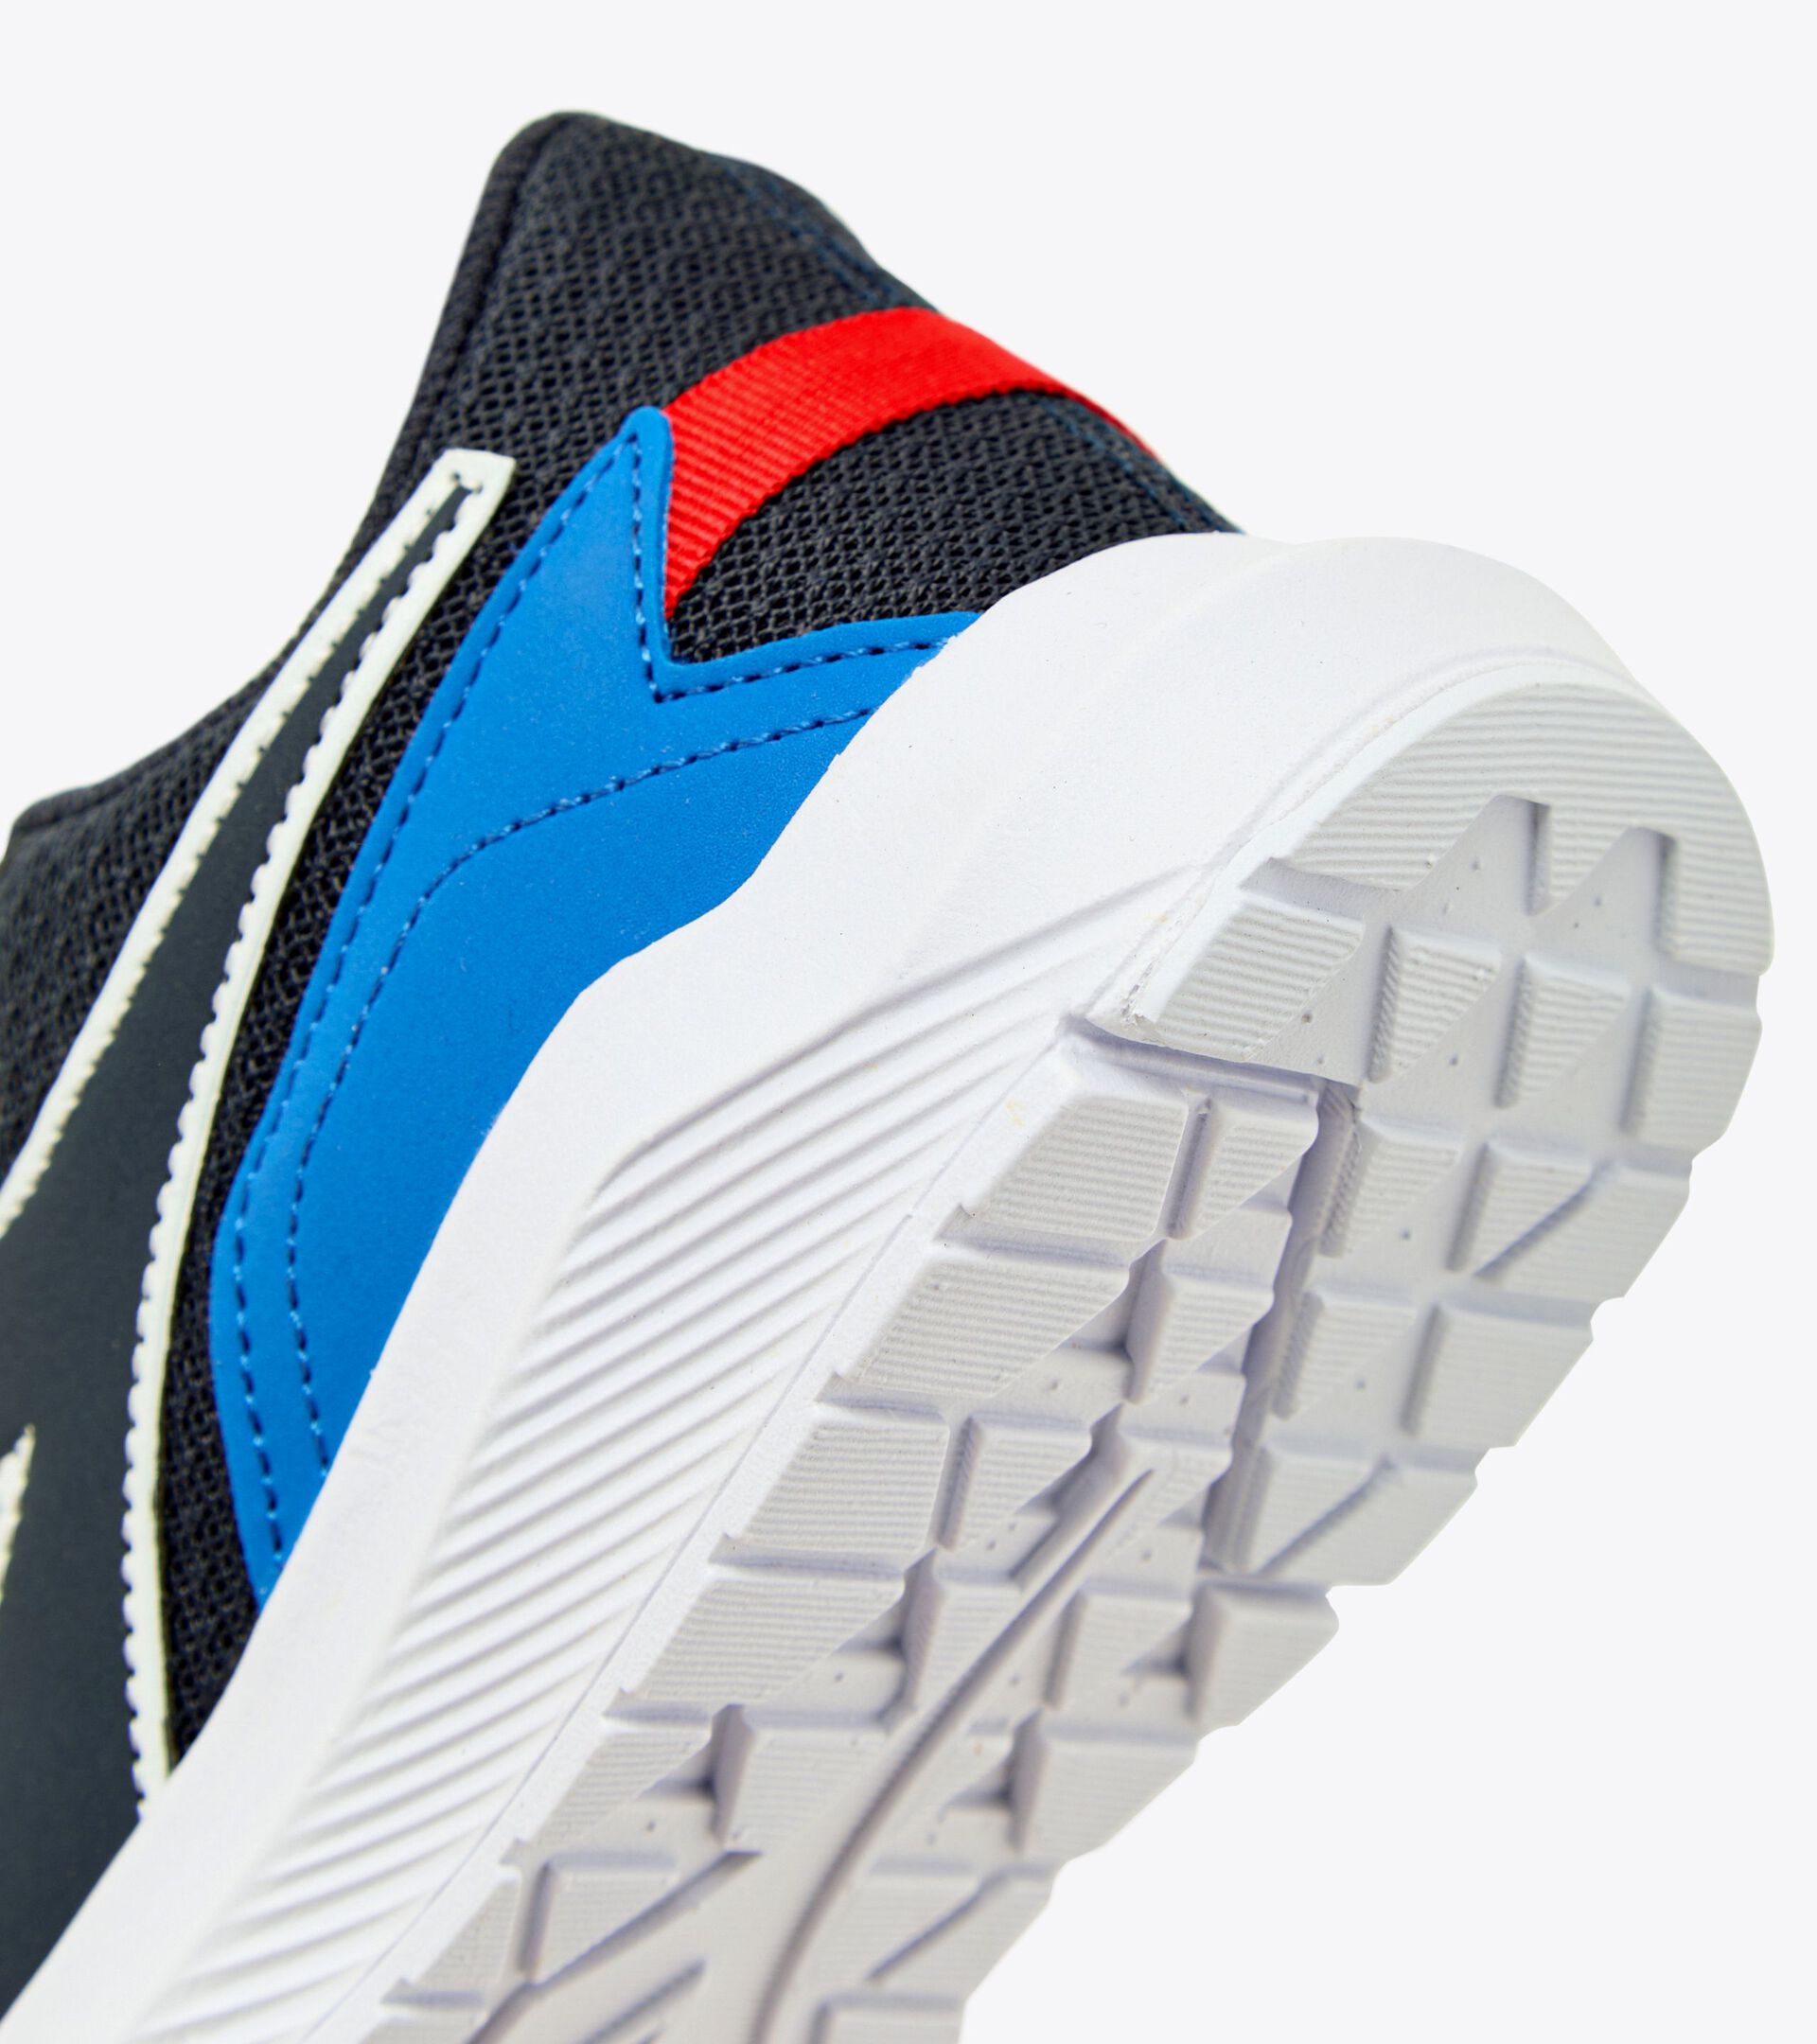 Junior running shoes - Gender Neutral FALCON 3 JR V BLUE CORSAIR/WHITE - Diadora